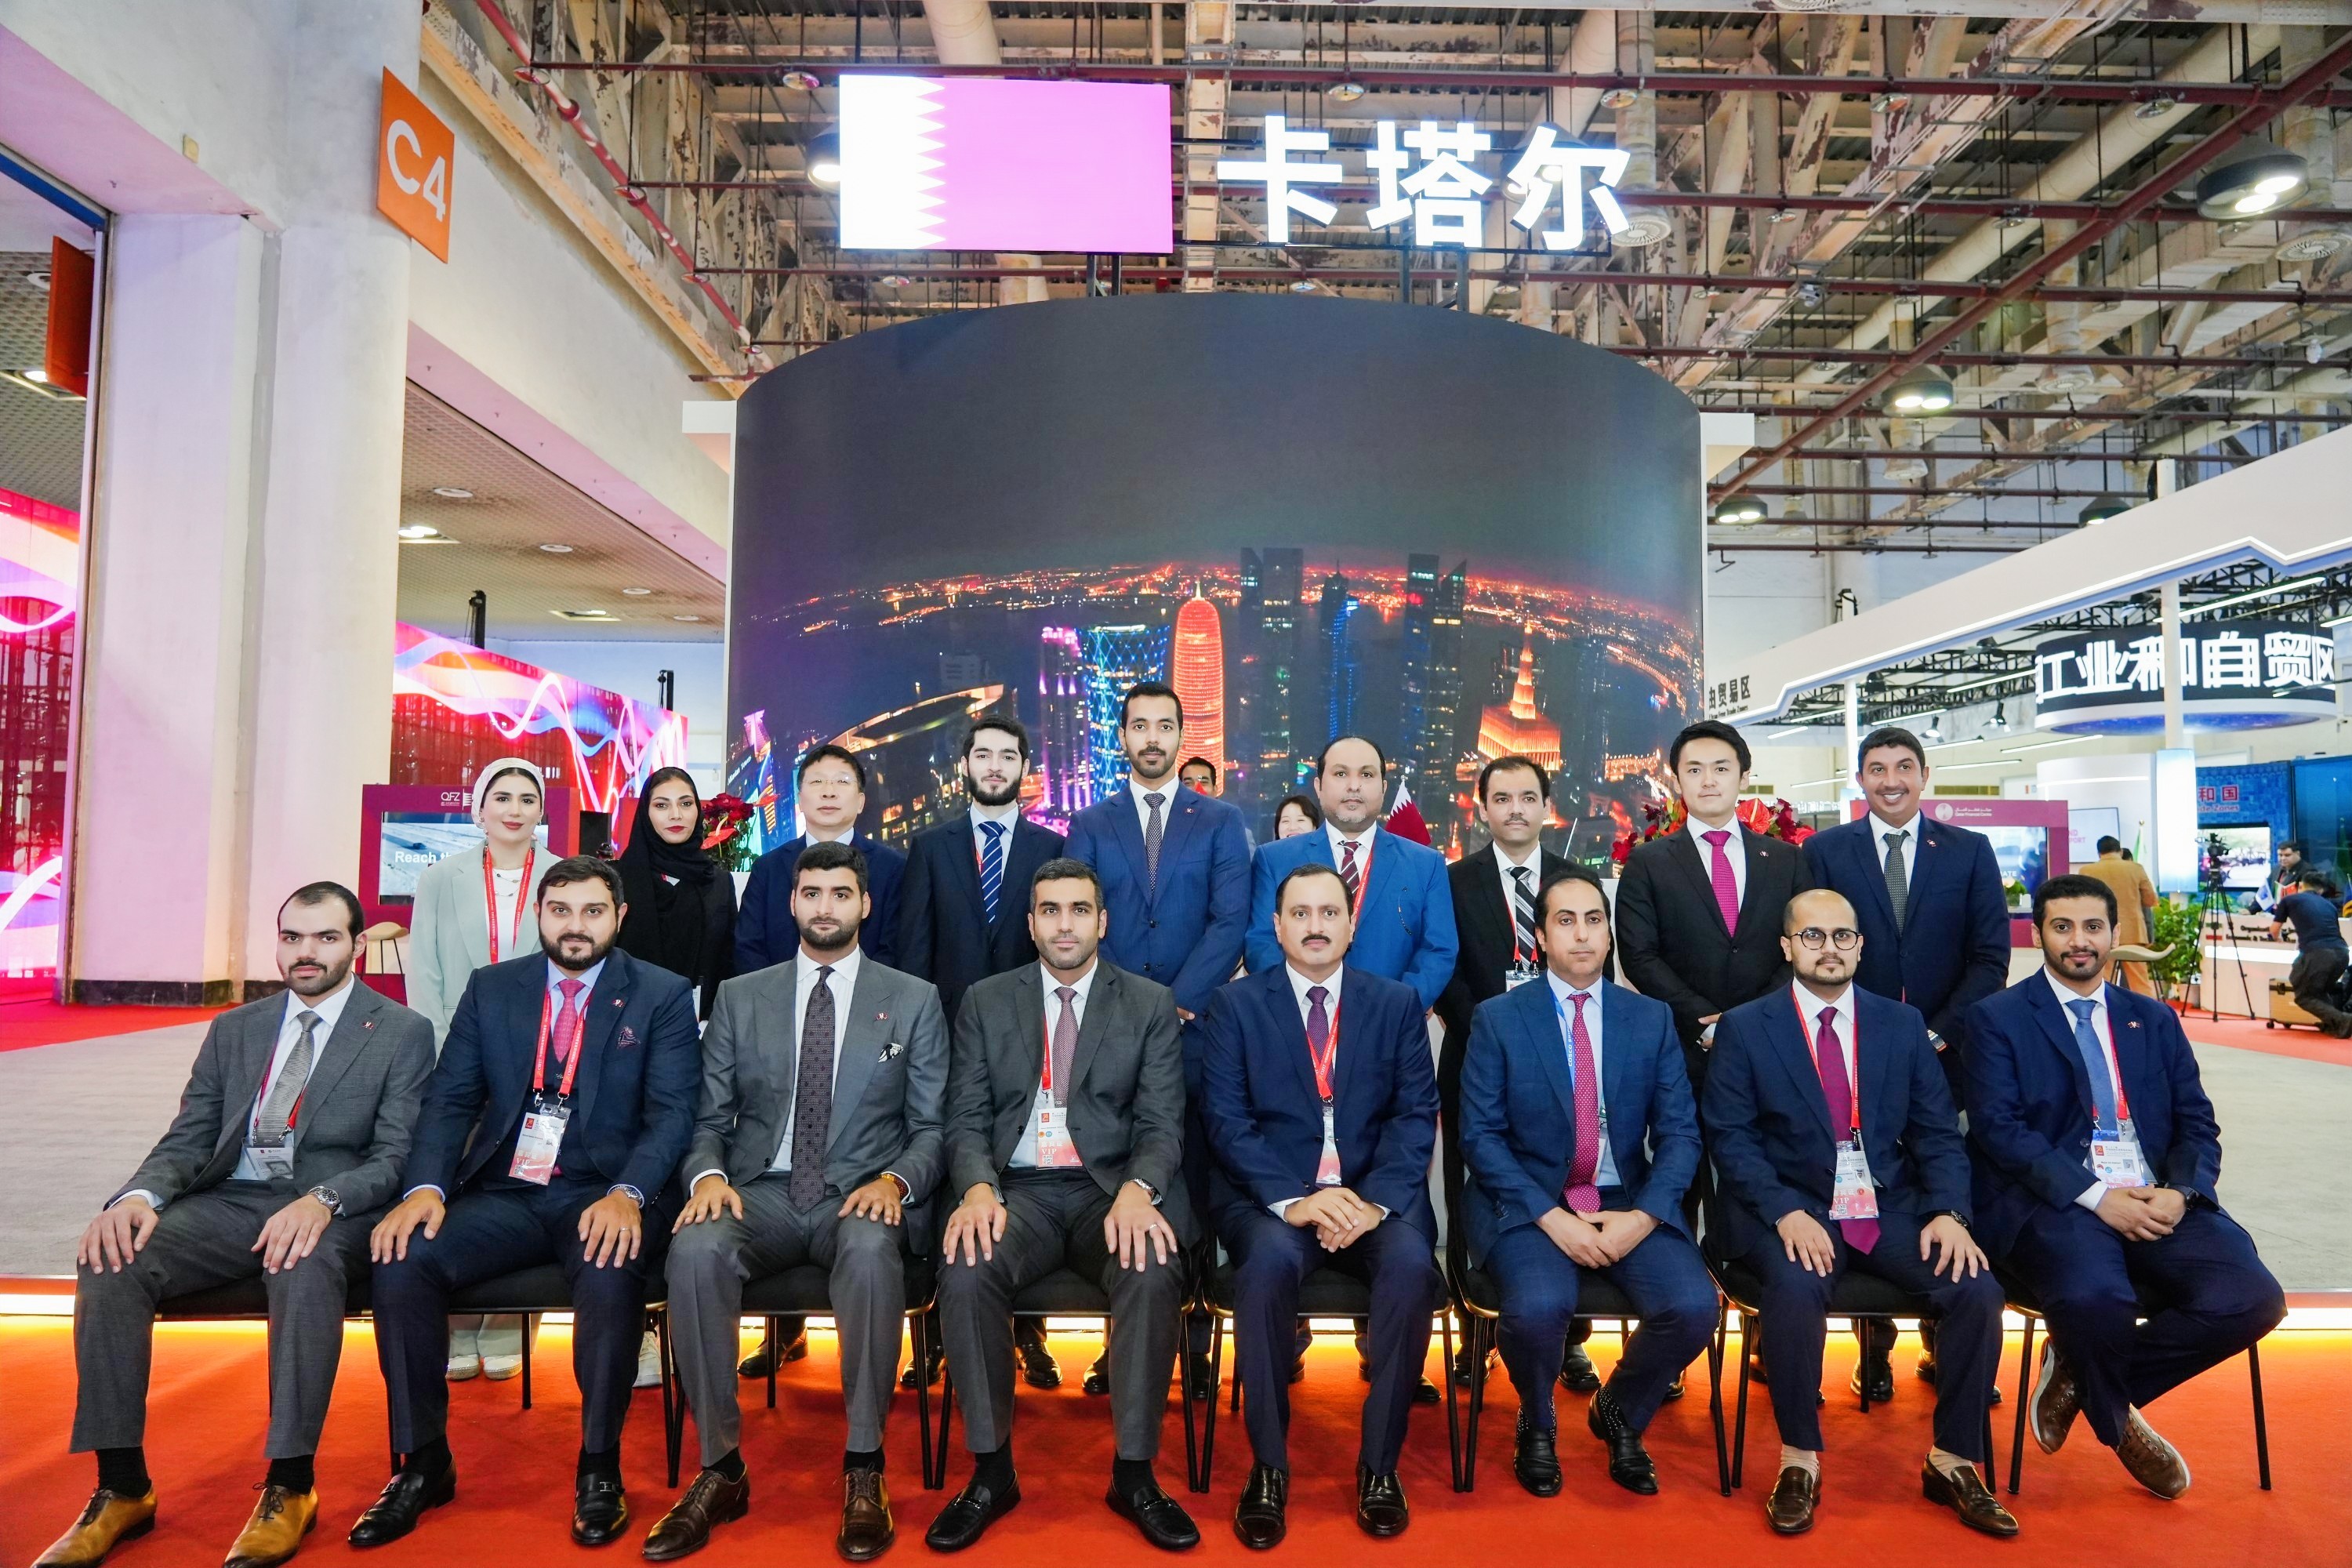 دولة قطر تُشارك في أعمال النسخة الثالثة والعشرين من معرض الصين الدولي للاستثمار والتجارة